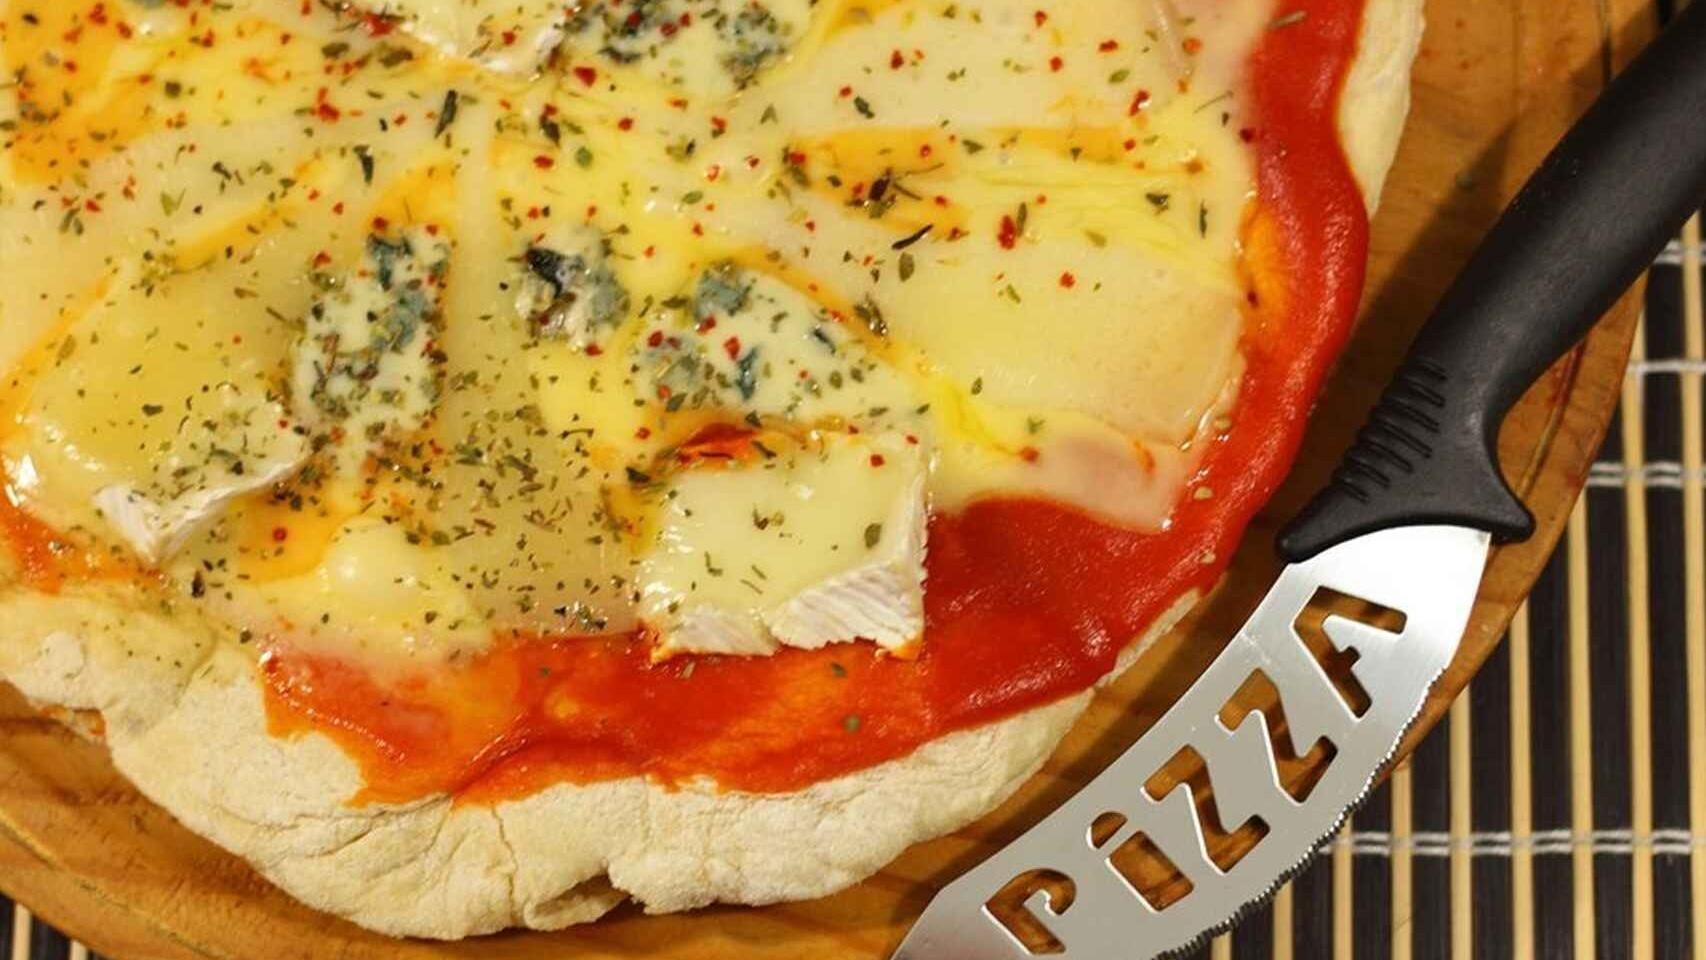 Pizzas sin gluten en Madrid, Guía Repsol